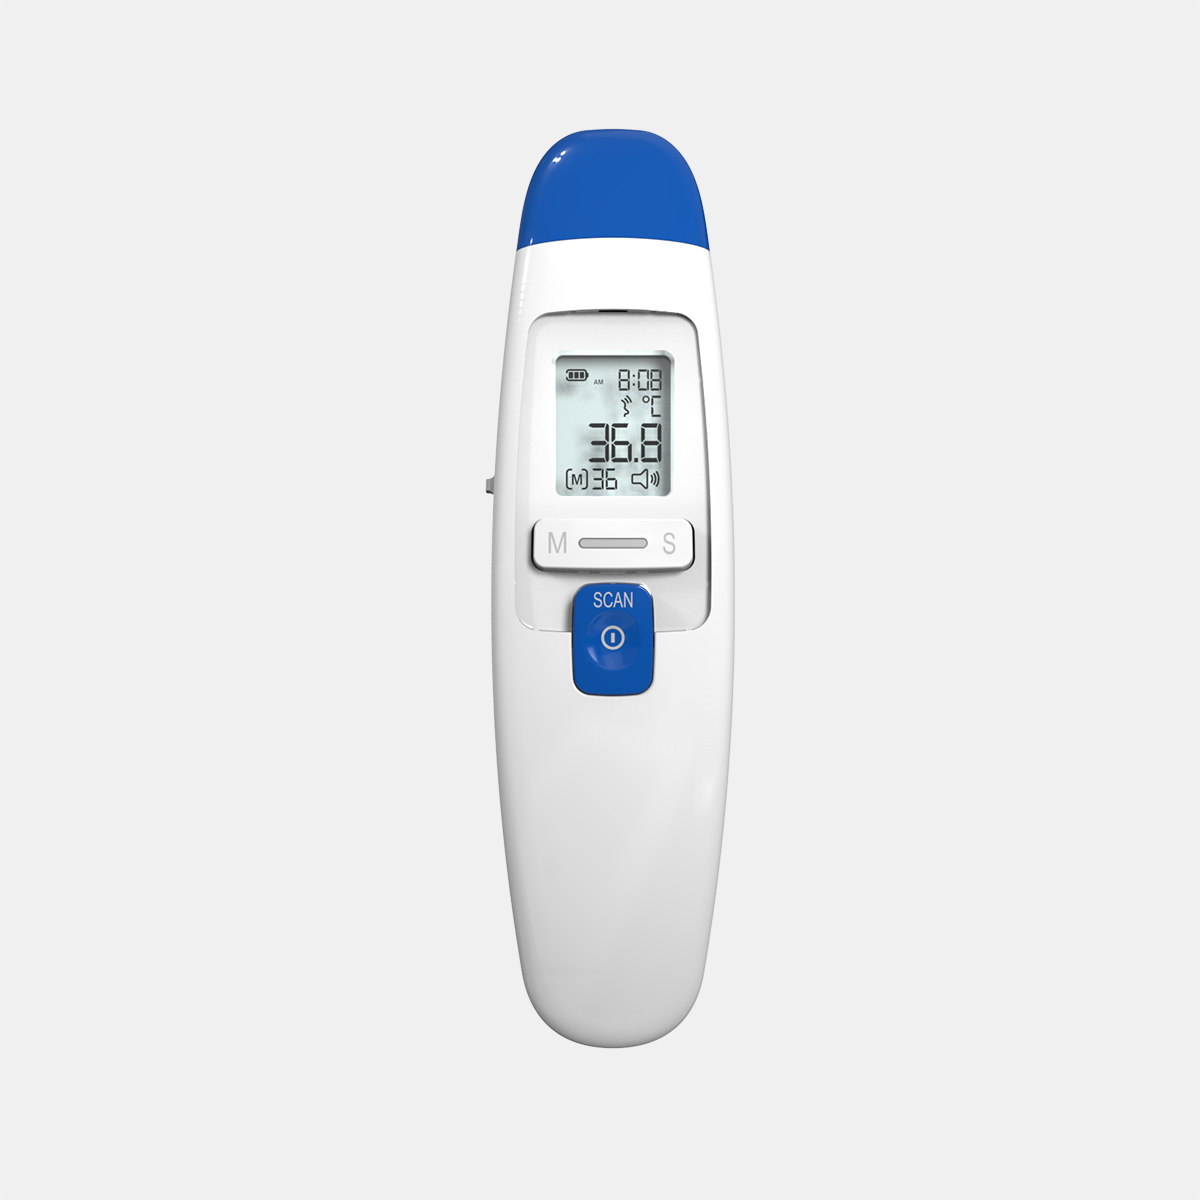 Infrapuna-kõrva ja otsmiku termomeeter DET-219